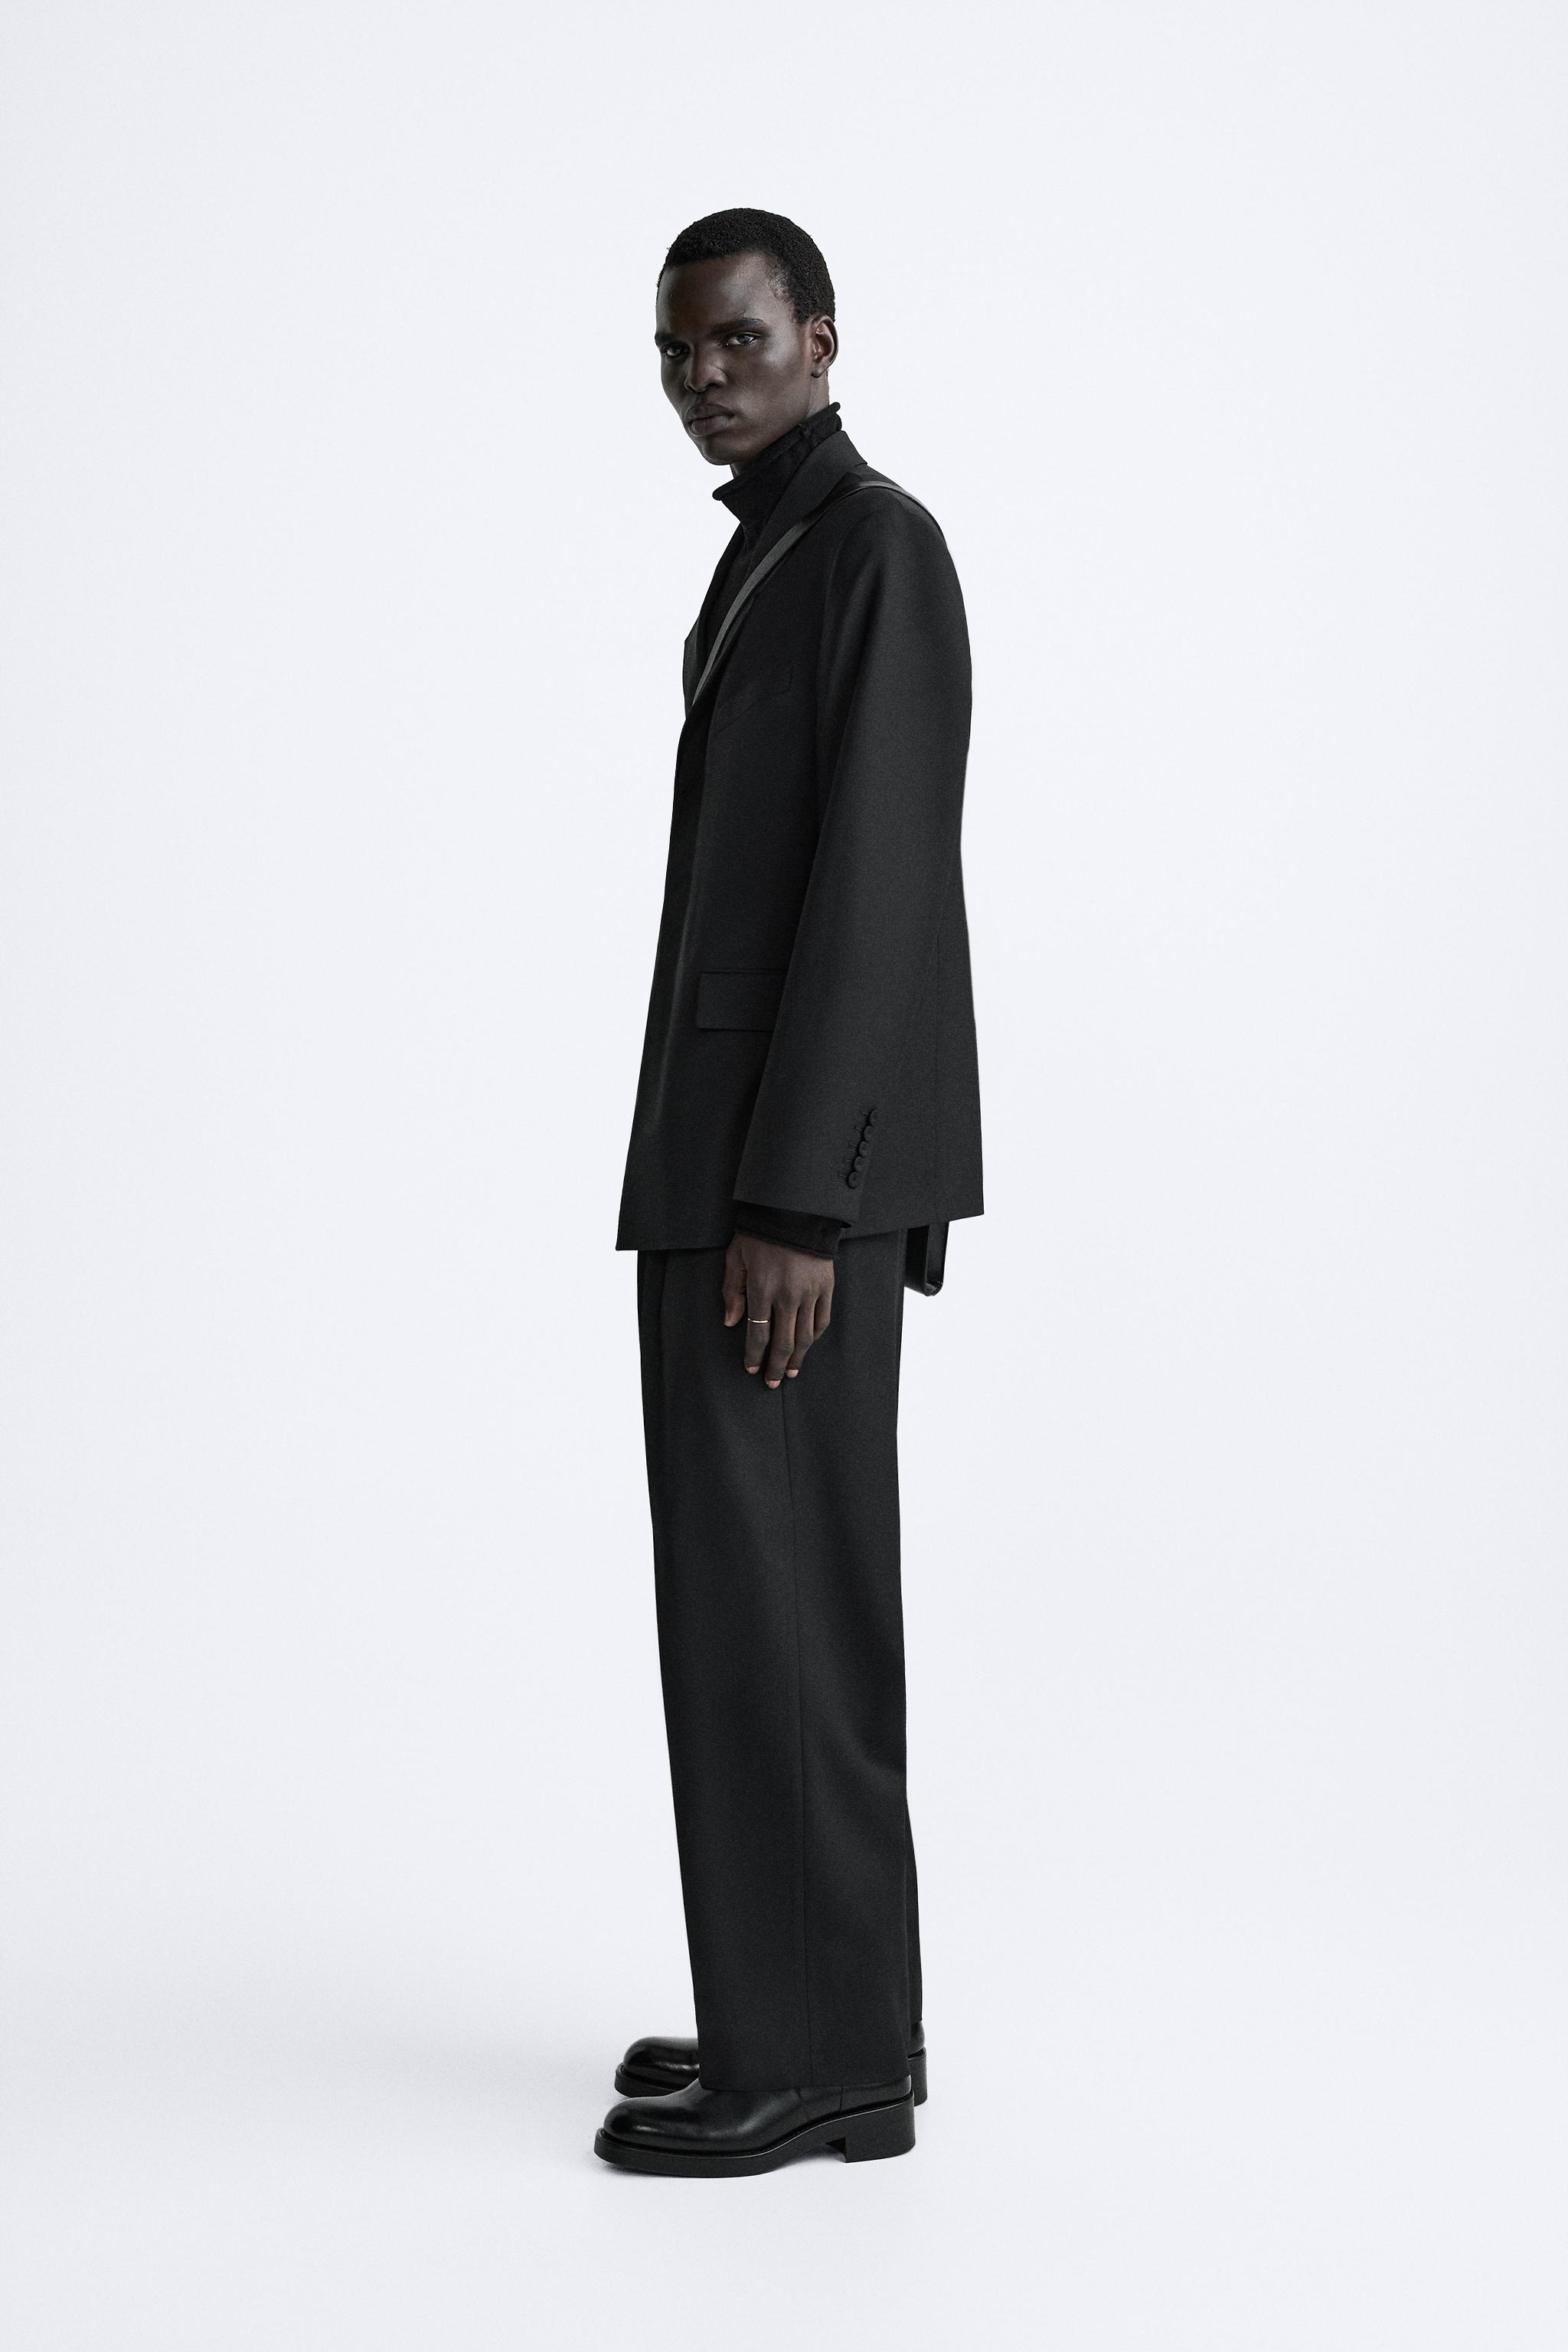 スーツ (ブラック・黒) | メンズ | 最新コレクション | ZARA 日本